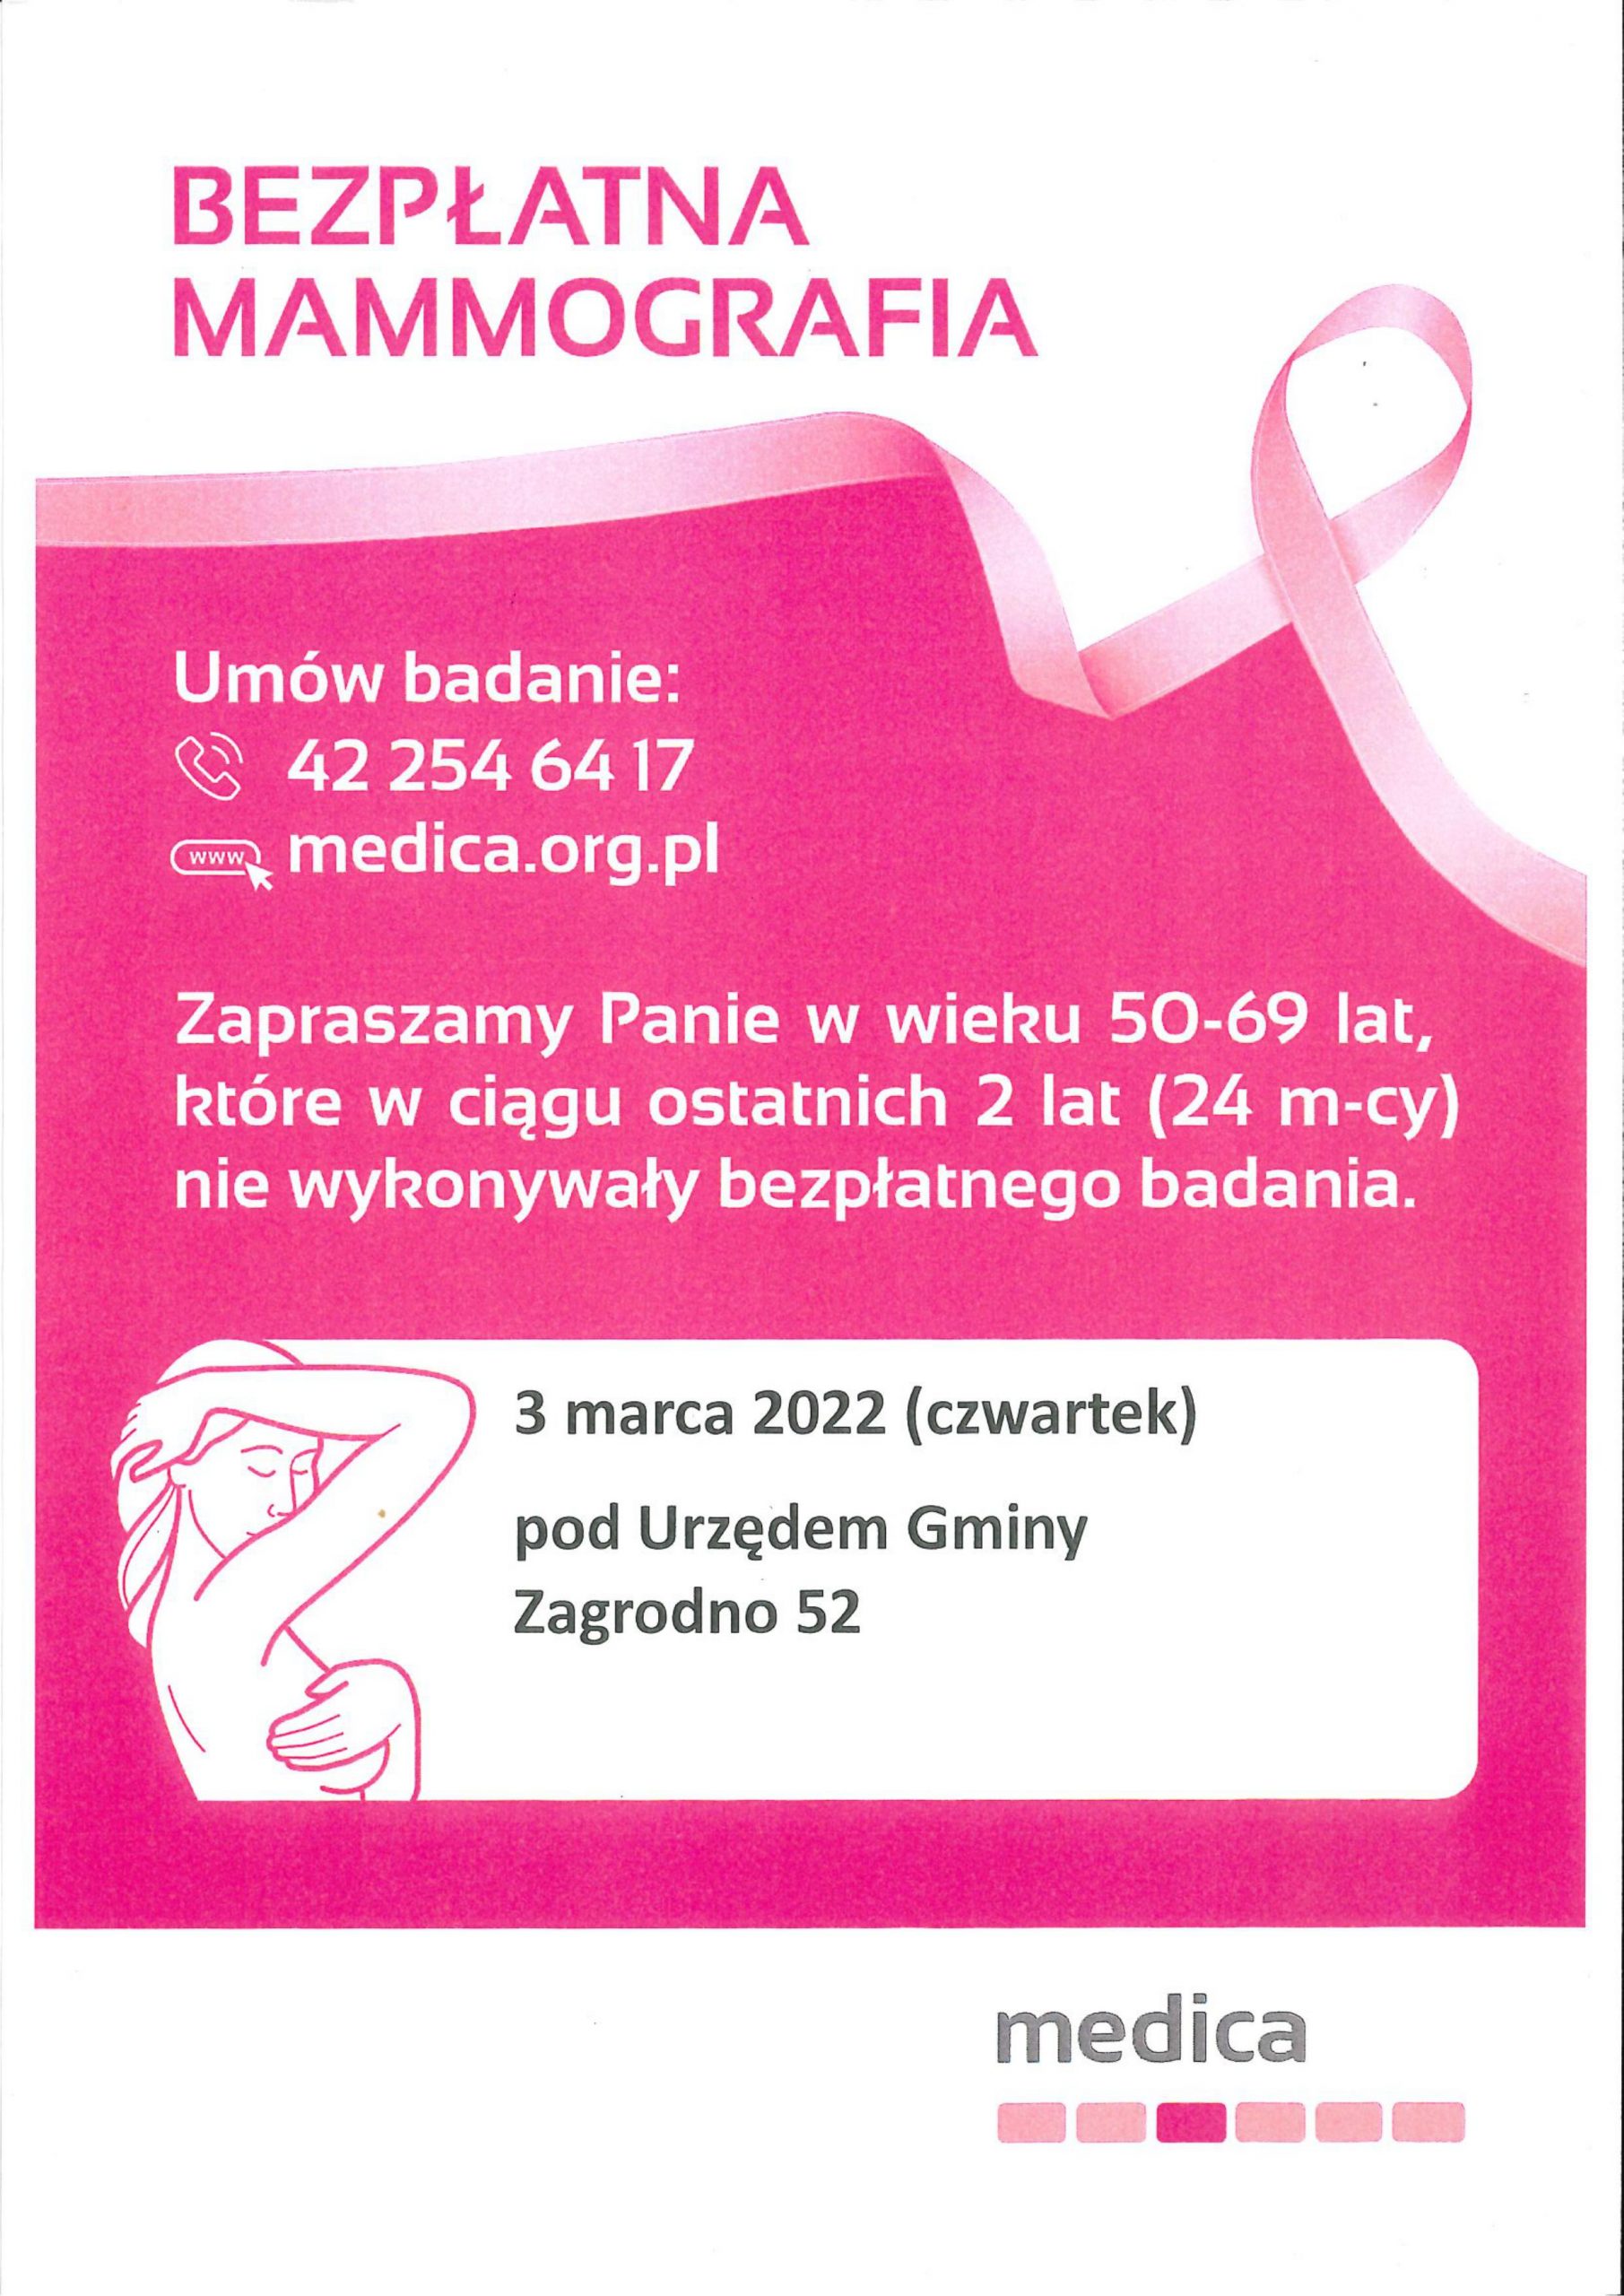 bezpłatna mammografia, umów badanie: 42 254 64 17, medica.org.pl, Zapraszamy w wieku 50-69 lat, które w ciągu ostatnich 2 lat nie wykonywały bezpłatnego badania. 3 marca 2022 [czwartek] pod urzędem gminy zagrodno 52